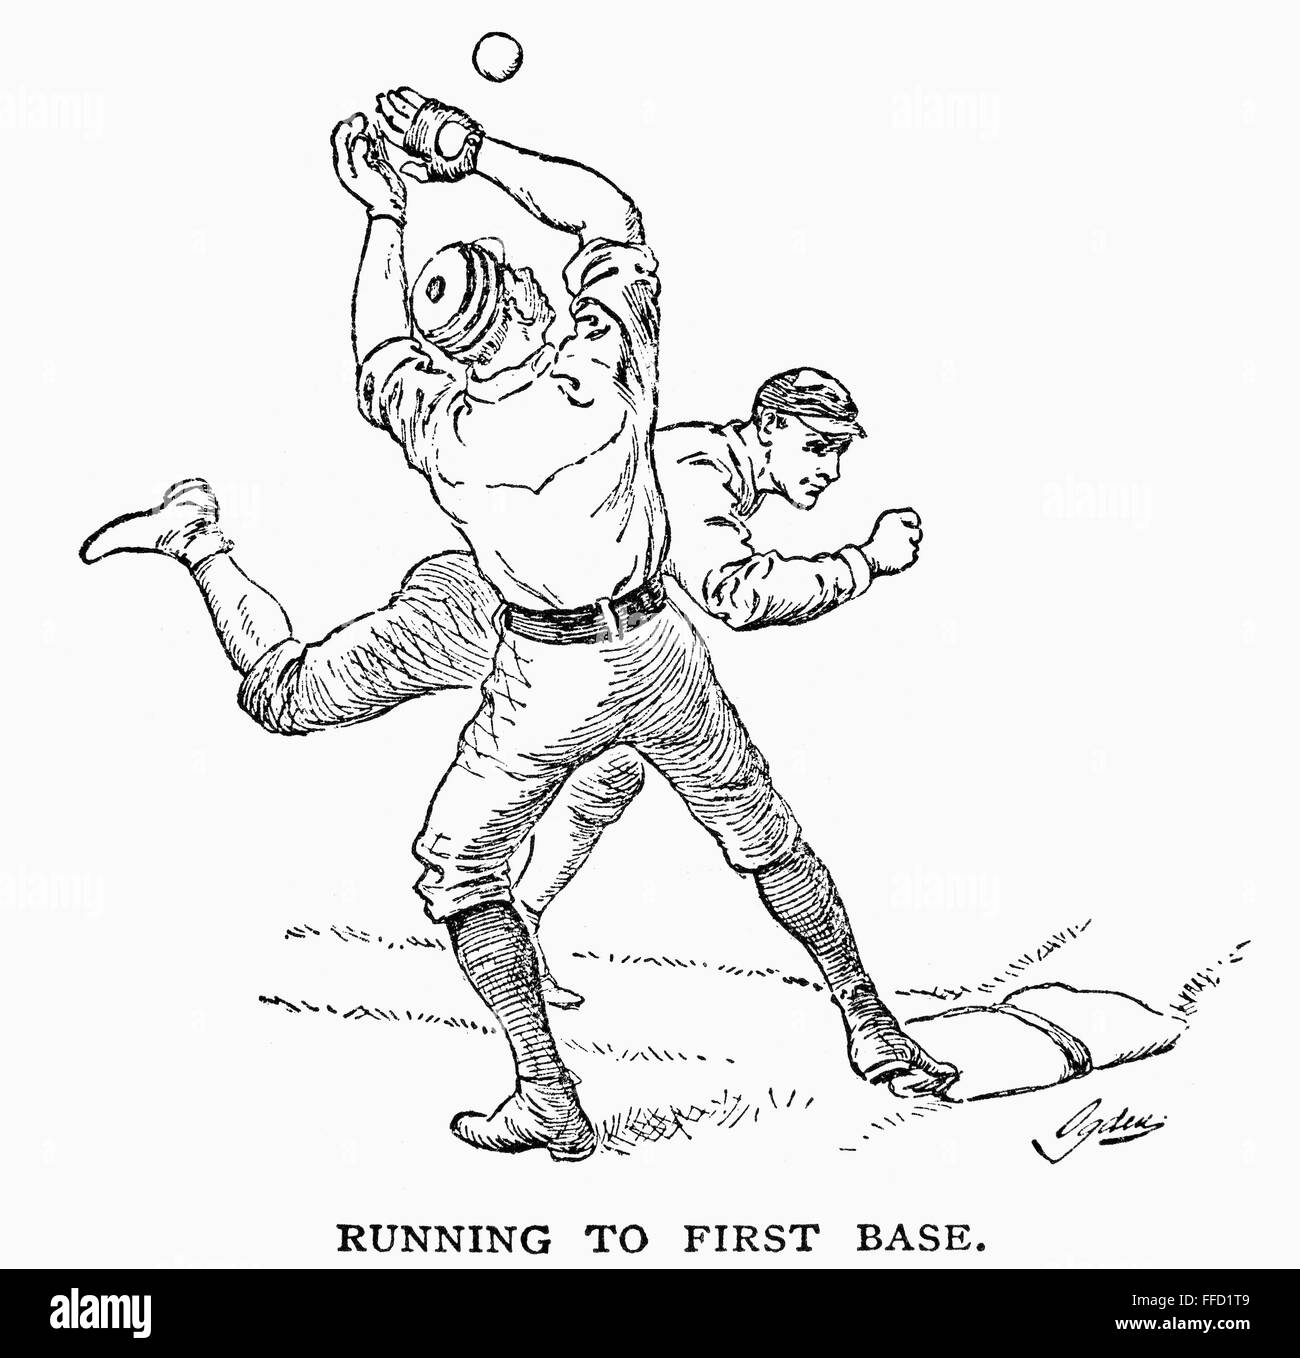 Des joueurs de baseball, 1889. /Nla à première base. La gravure sur bois, cuisine américaine, 1889. Banque D'Images